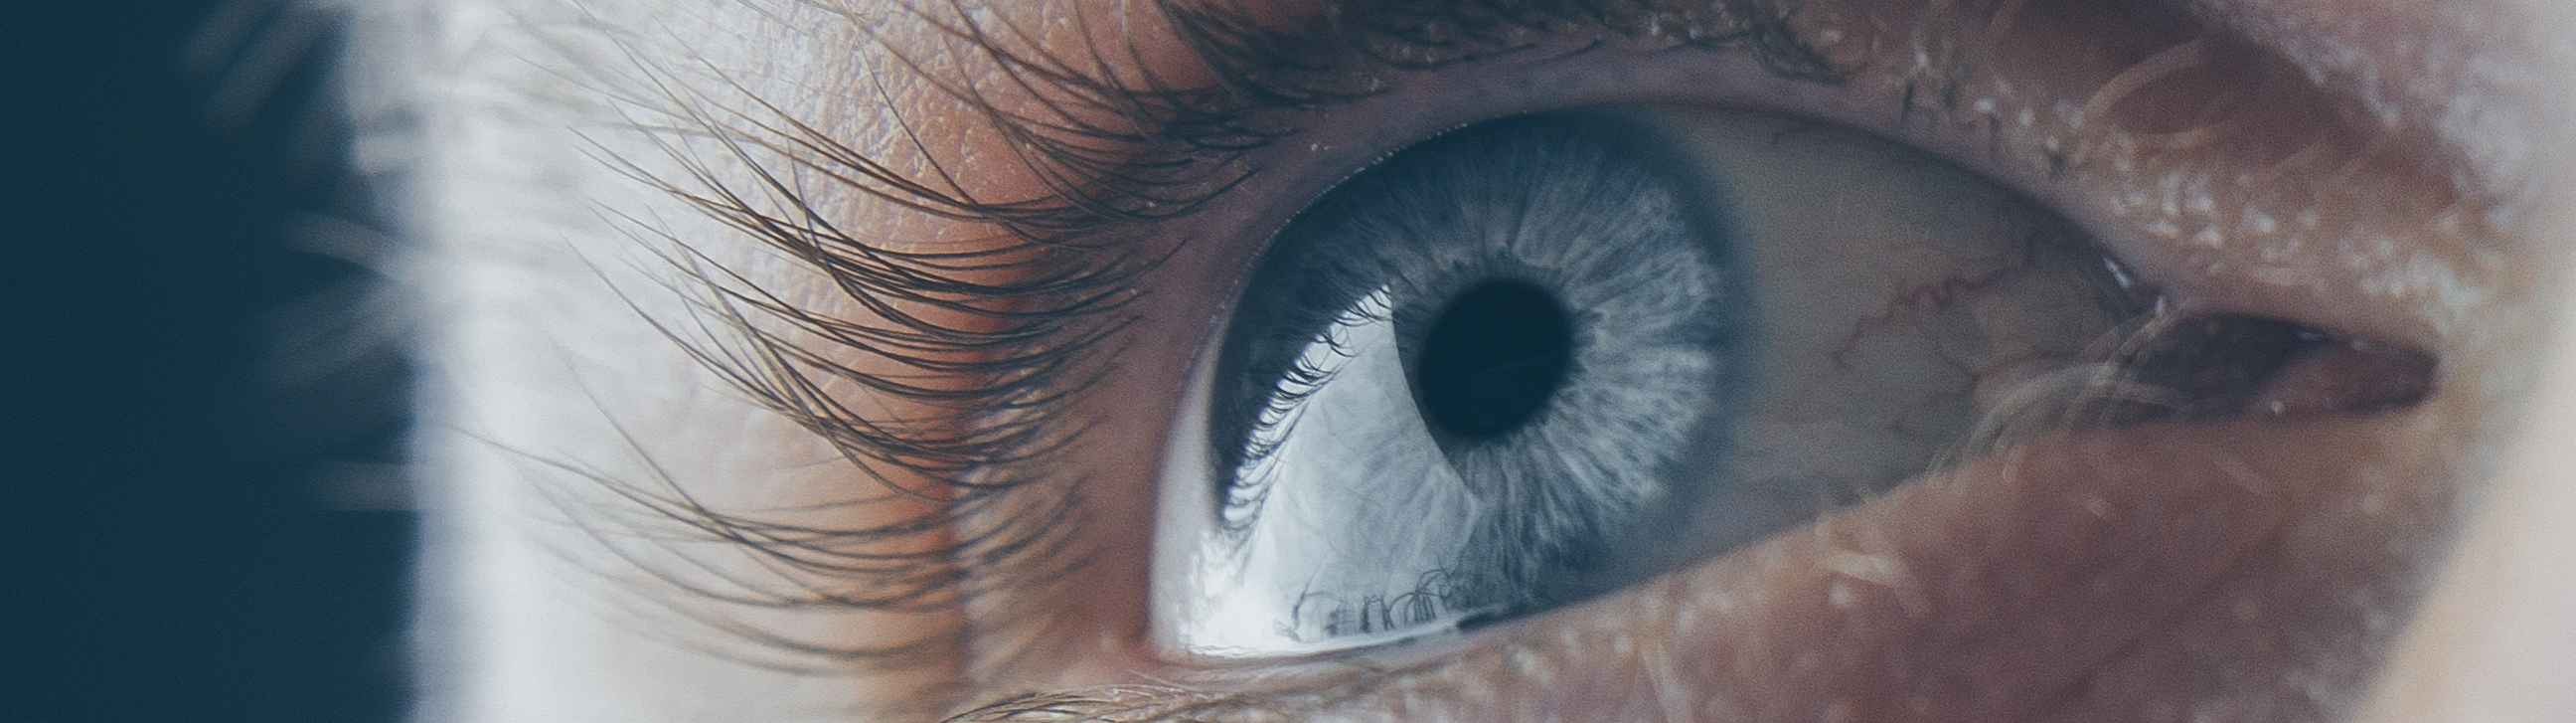 Desarrollan una córnea bioartificial capaz de devolver la vista a las personas ciegas